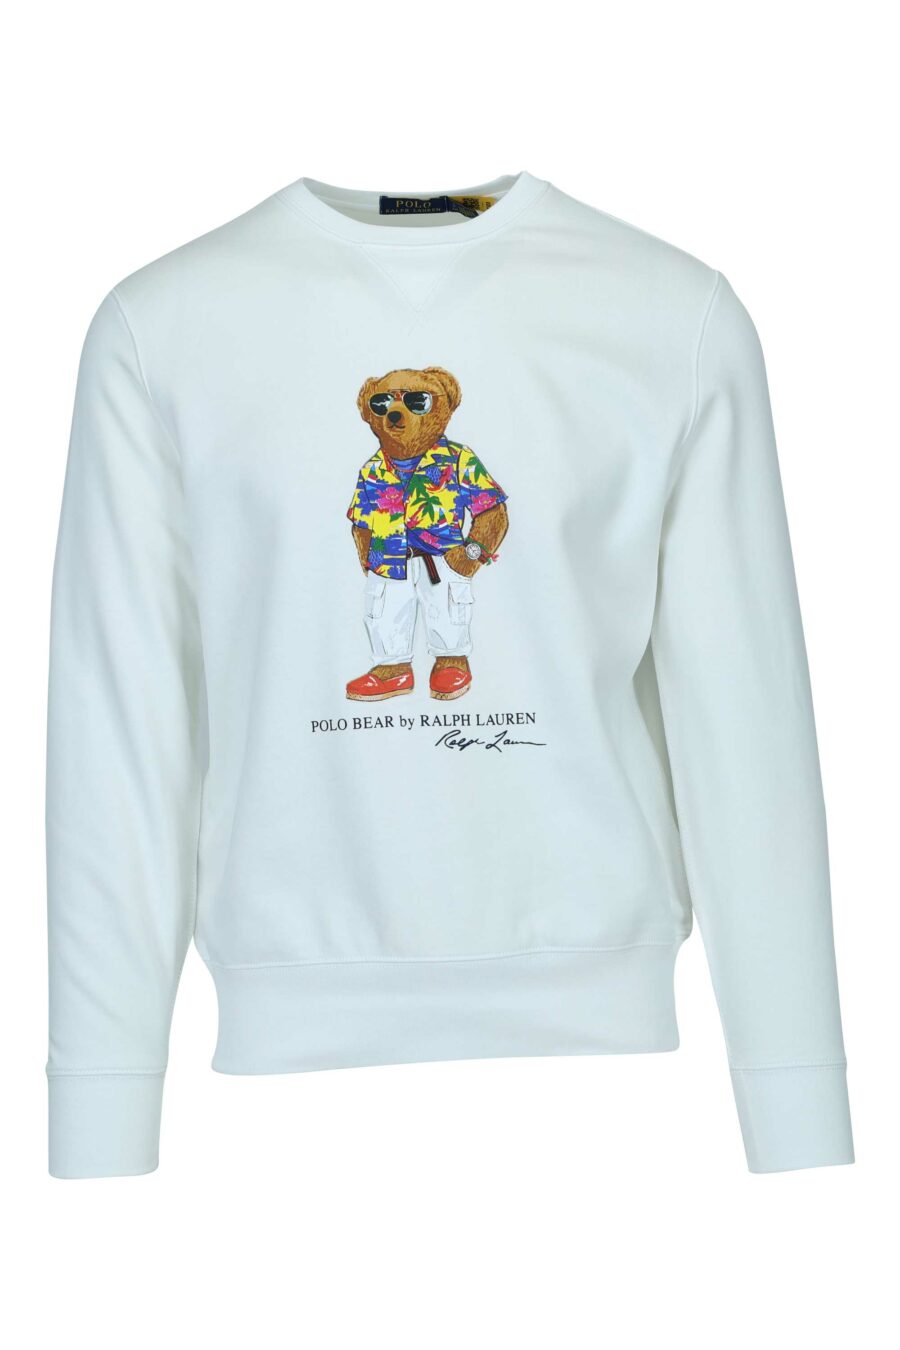 White sweatshirt with "polo bear" maxilogo - 3616536084239